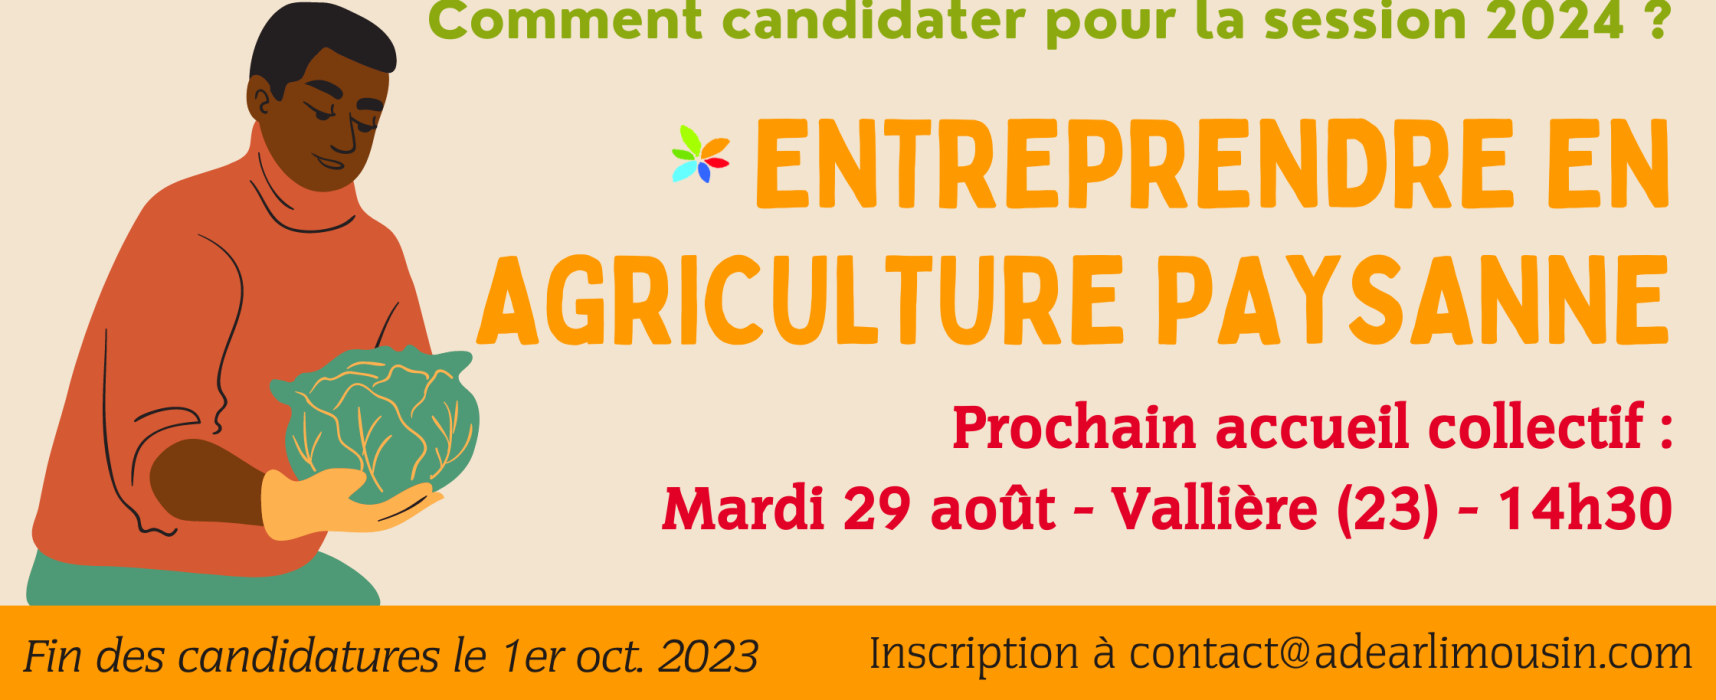 [ADEAR] Formation « Entreprendre en Agriculture Paysanne » session 2024 (candidature jusqu’au 15 septembre 2023) >